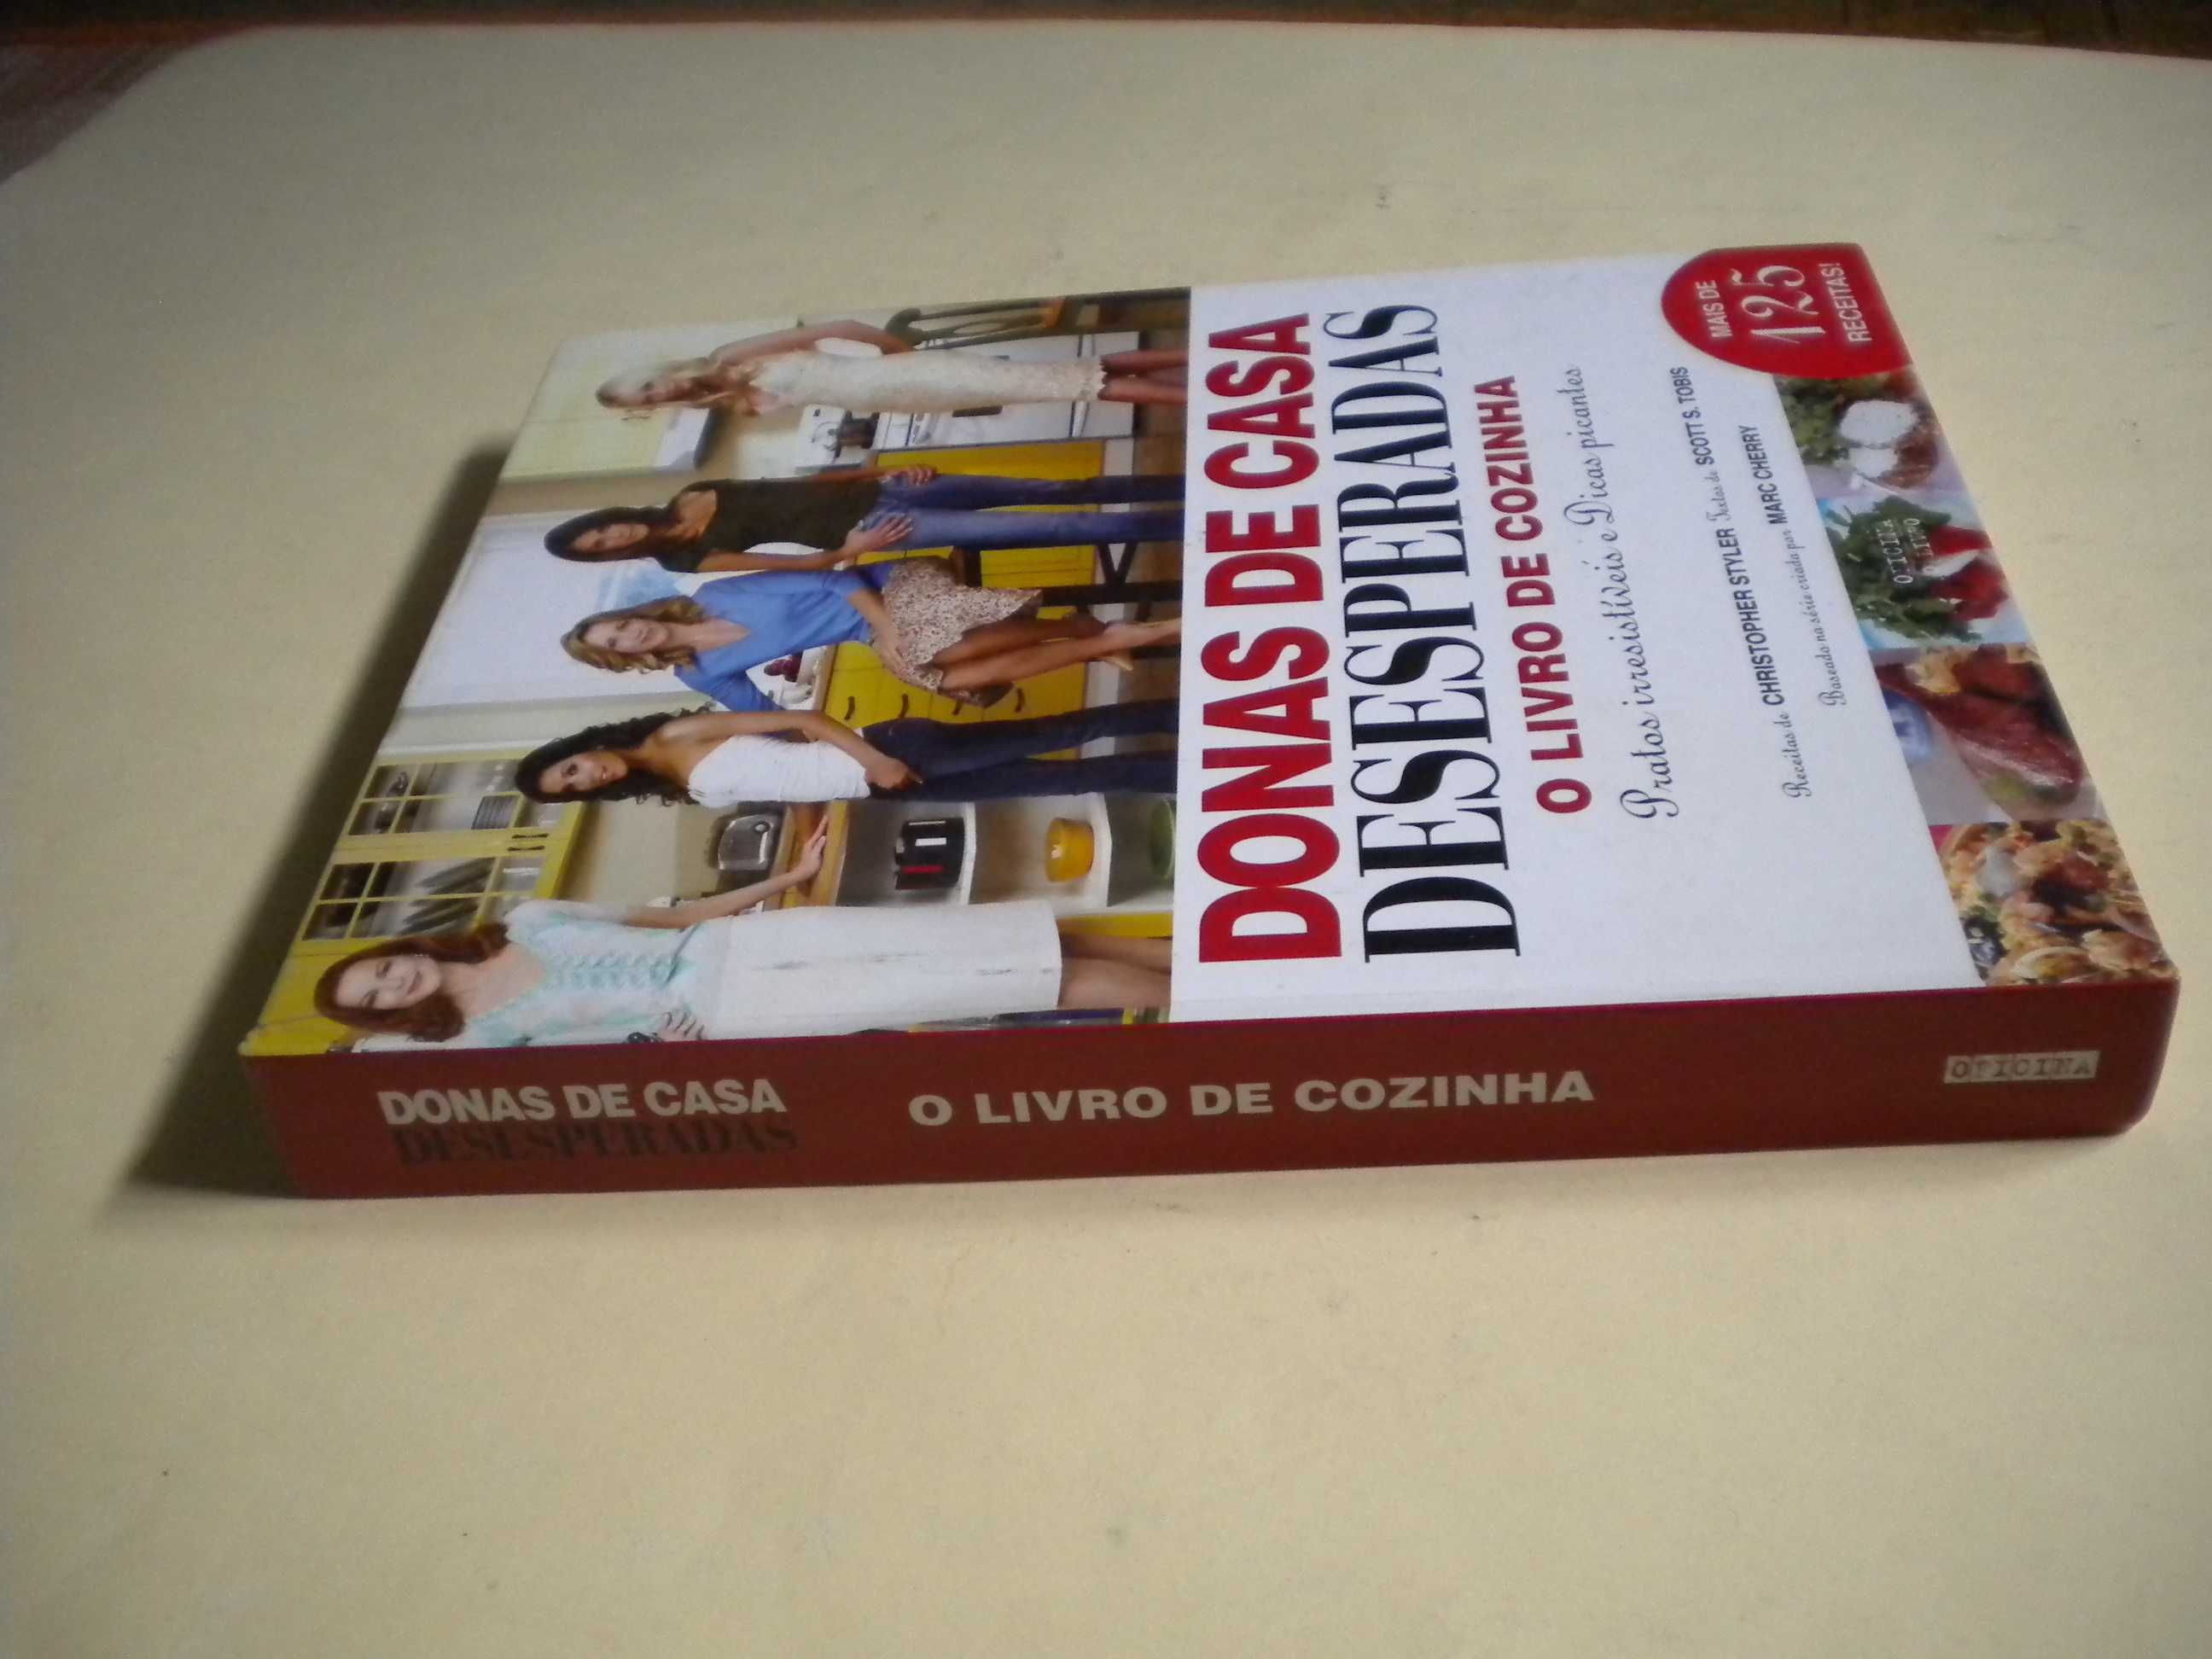 Donas de Casa Desesperadas - O Livro de Cozinha
de Christopher Styler